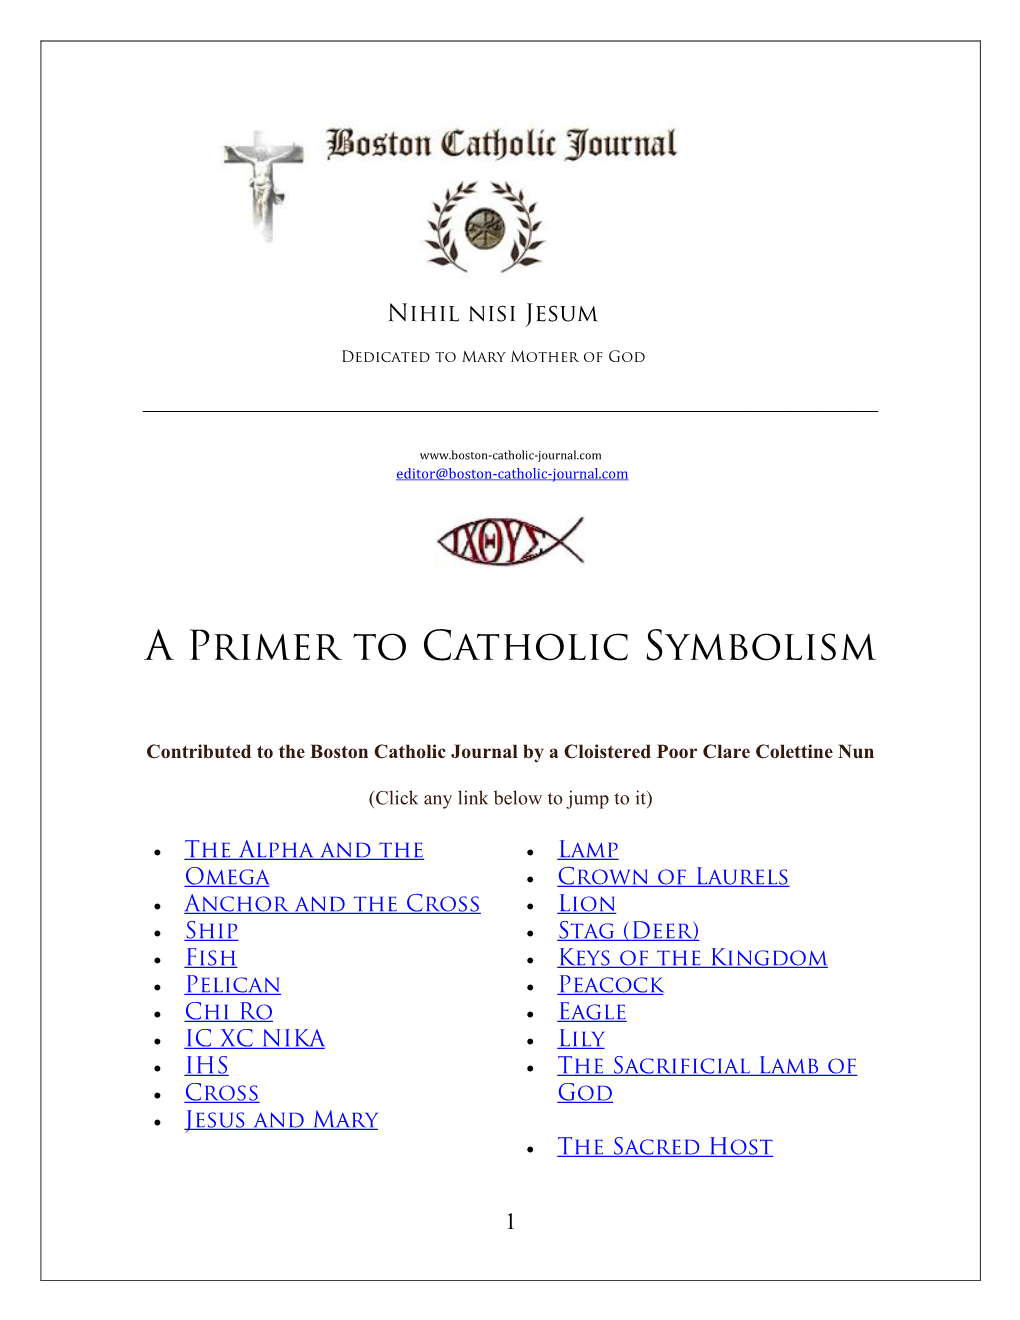 A Primer to Catholic Symbolism